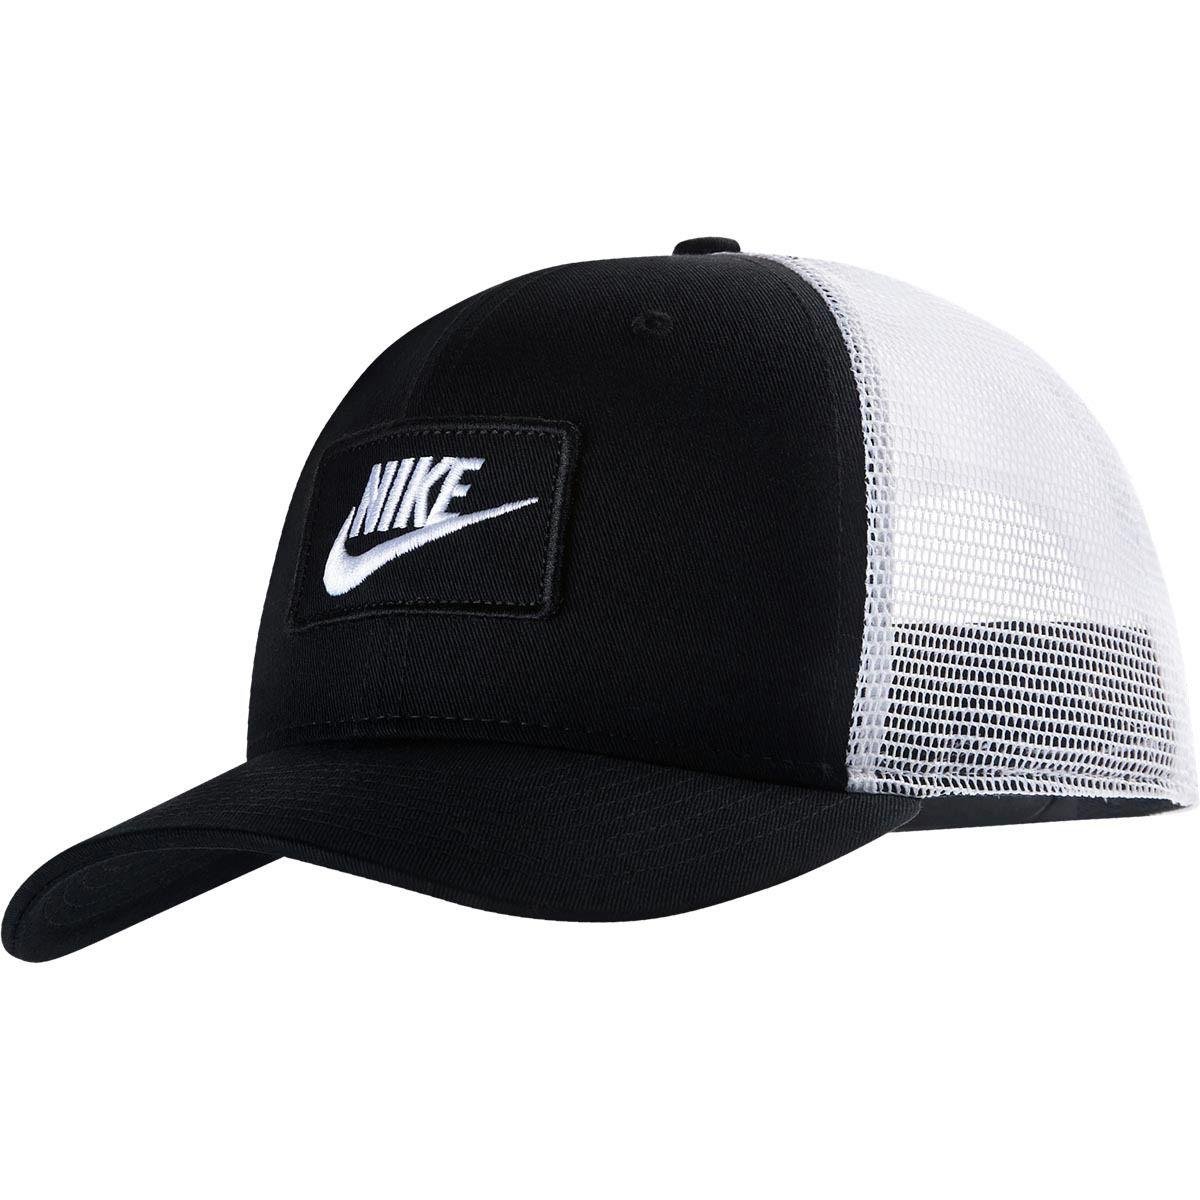 Nike Cotton Sportswear Classic99 Trucker Cap in Black/White (Black) for Men  - Lyst